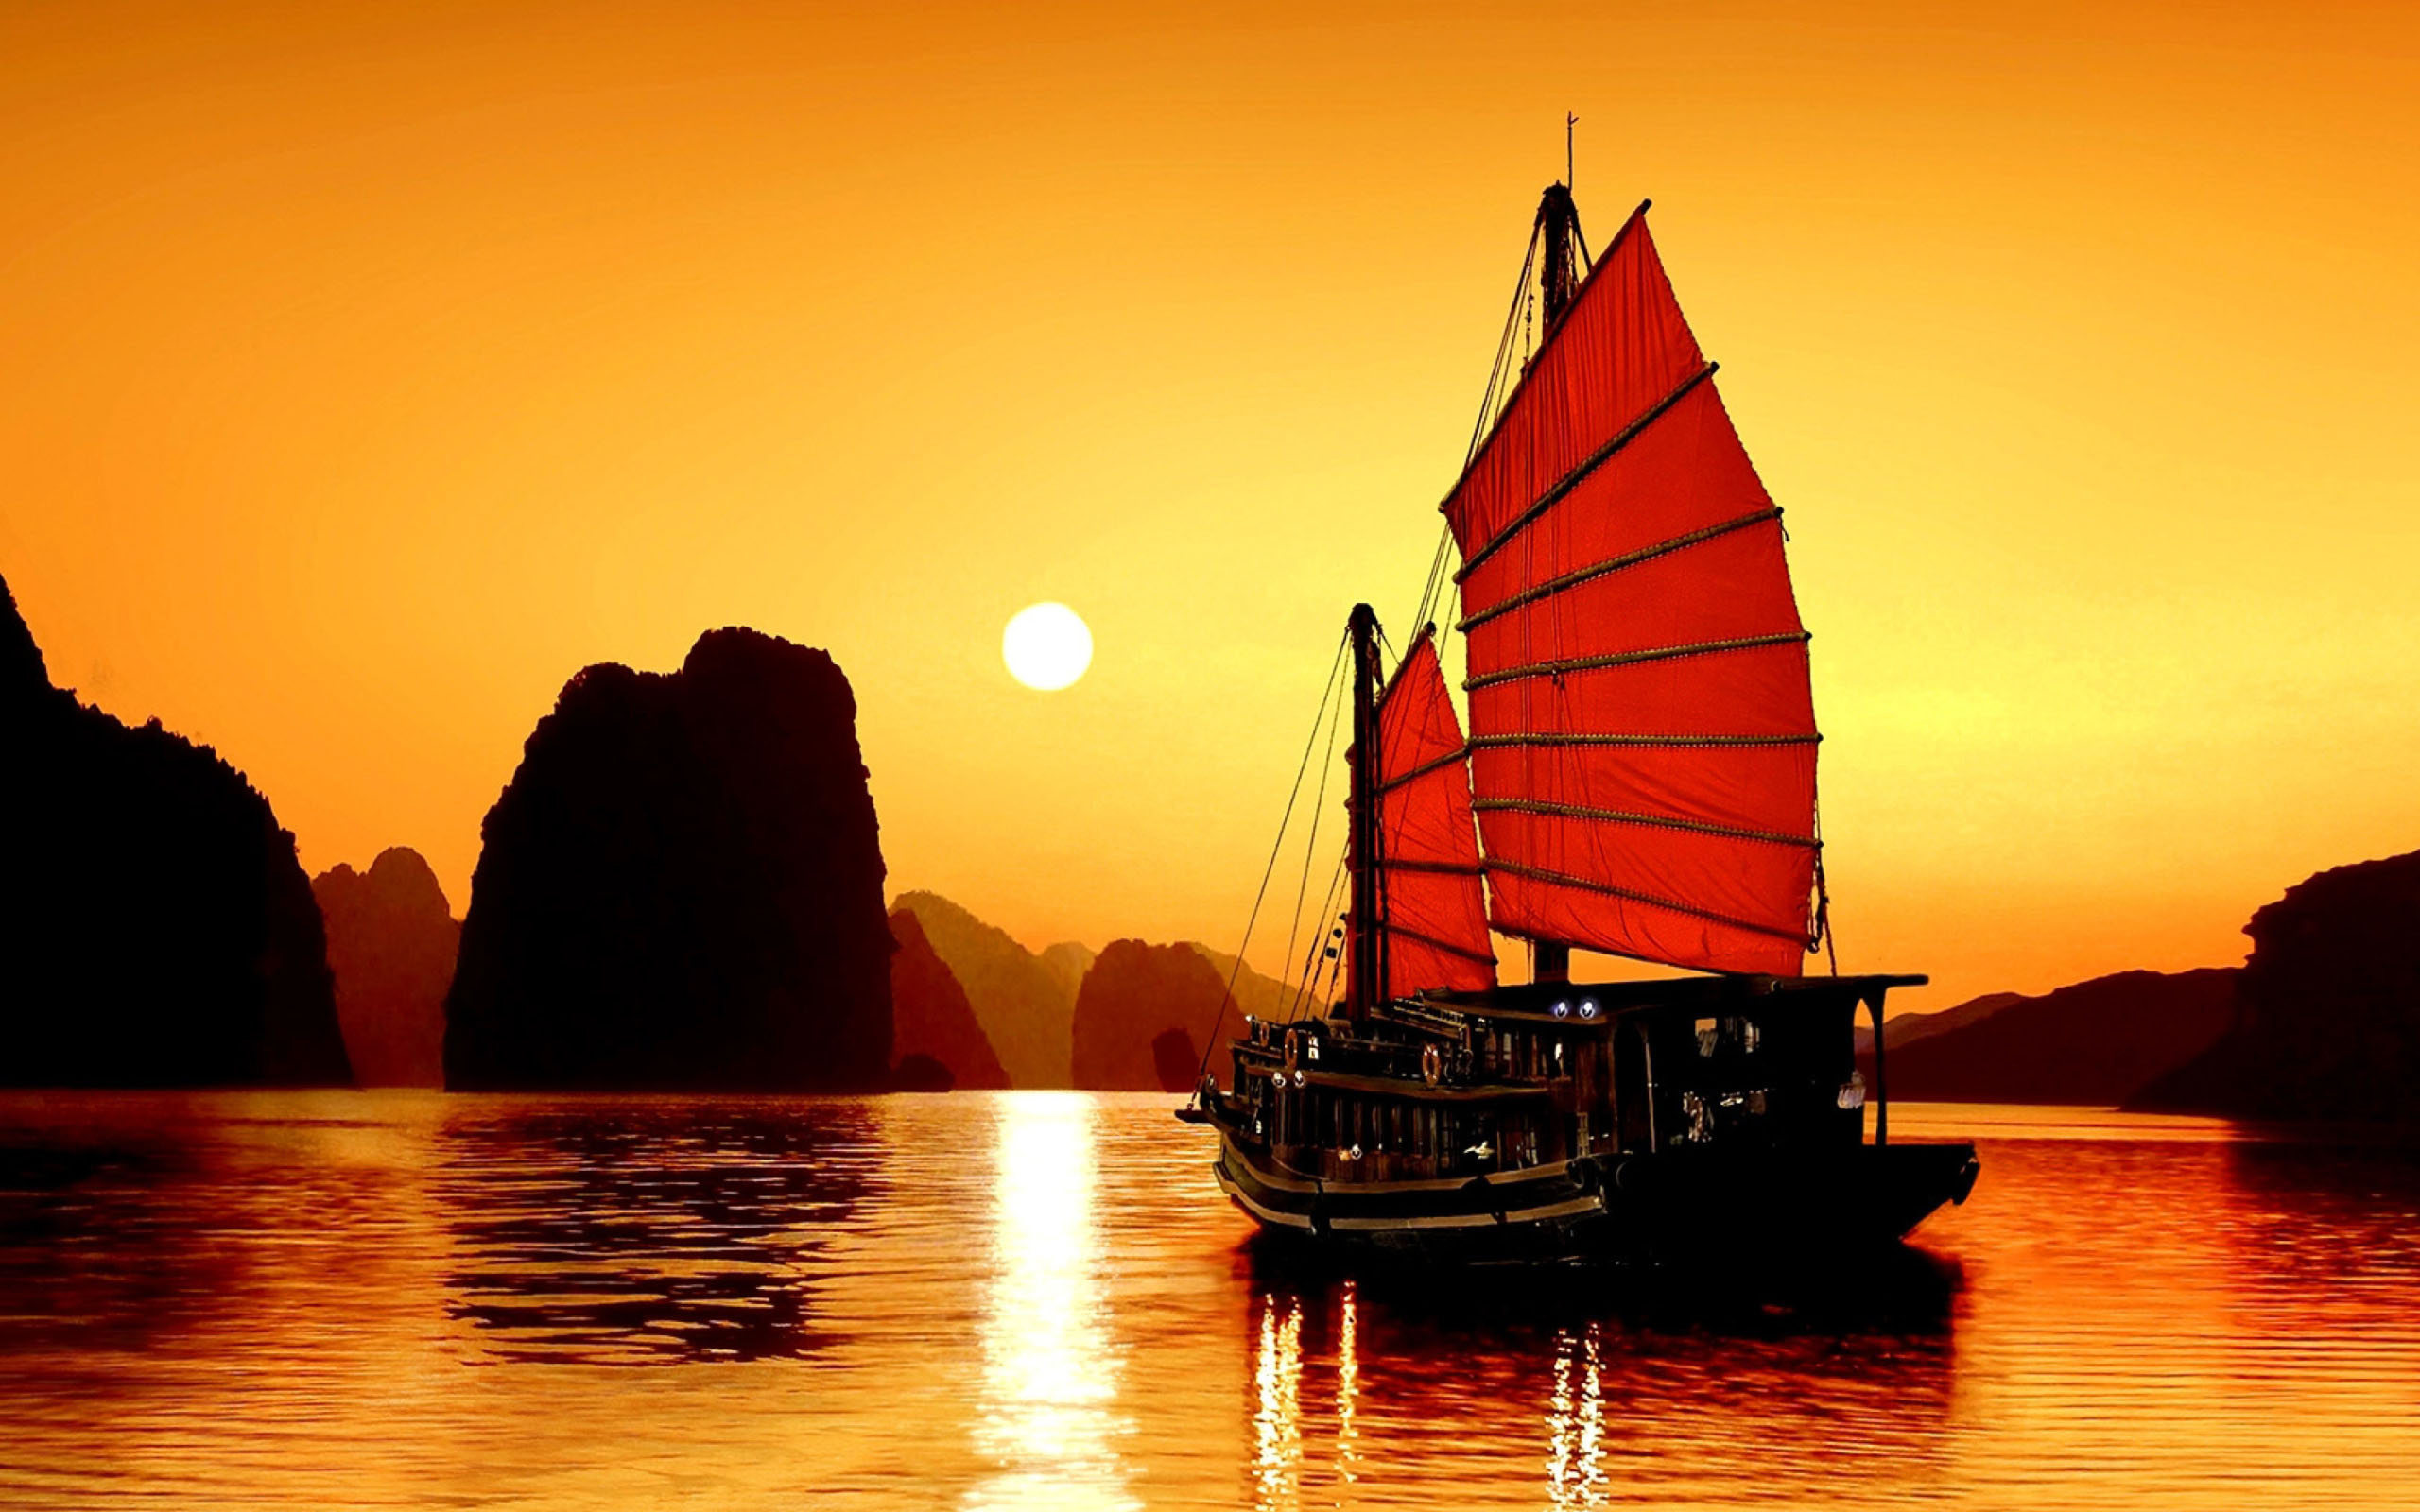 Việt Nam là điểm đến lý tưởng để ngắm những cảnh hoàng hôn đẹp nhất. Từ những cánh đồng ruộng bậc thang đến những bãi biển mới lạ, bạn sẽ không thể cưỡng lại được sự quyến rũ của những mảnh đất đẹp nhất Việt Nam.